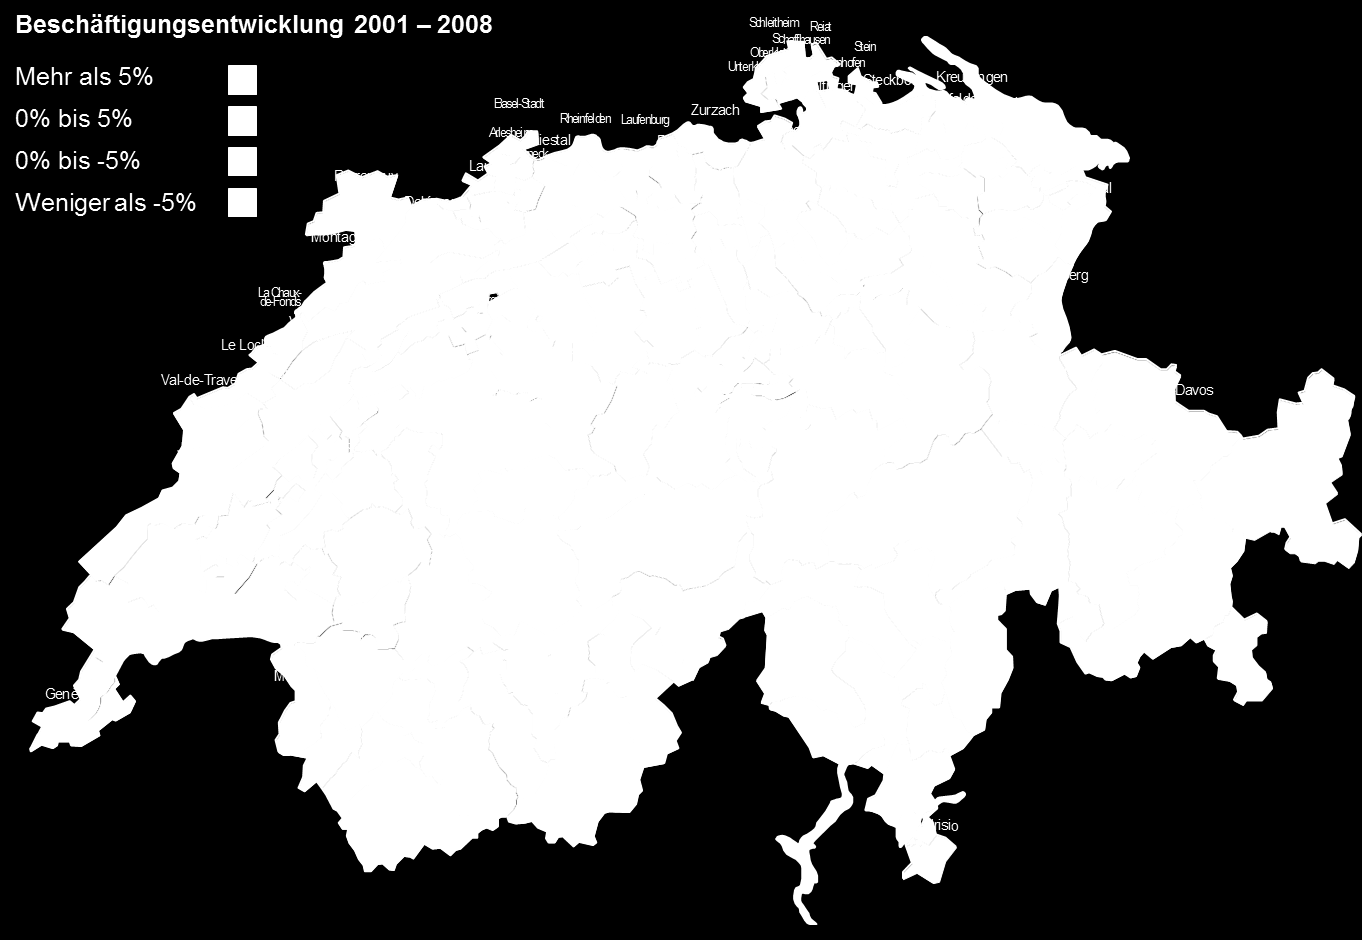 Schwache Beschäftigungsentwicklung in Bergregionen Abbildung: Beschäftigungsentwicklung 2001 2008 in den Schweizer